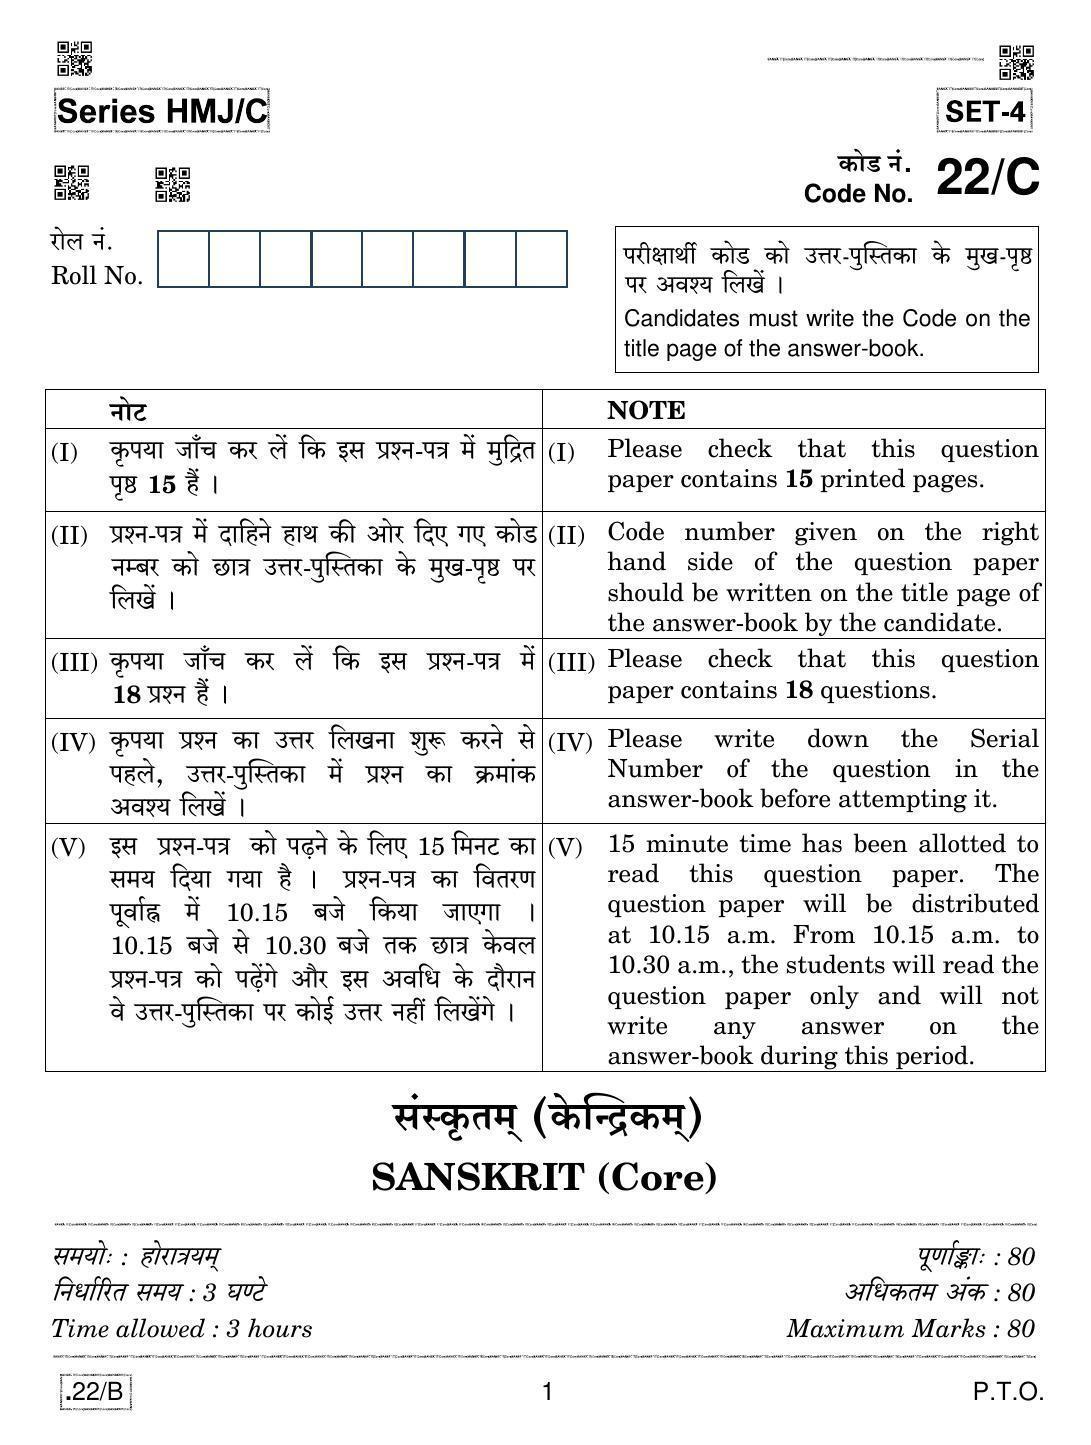 CBSE Class 12 Sanskrit Core 2020 Compartment Question Paper - Page 1